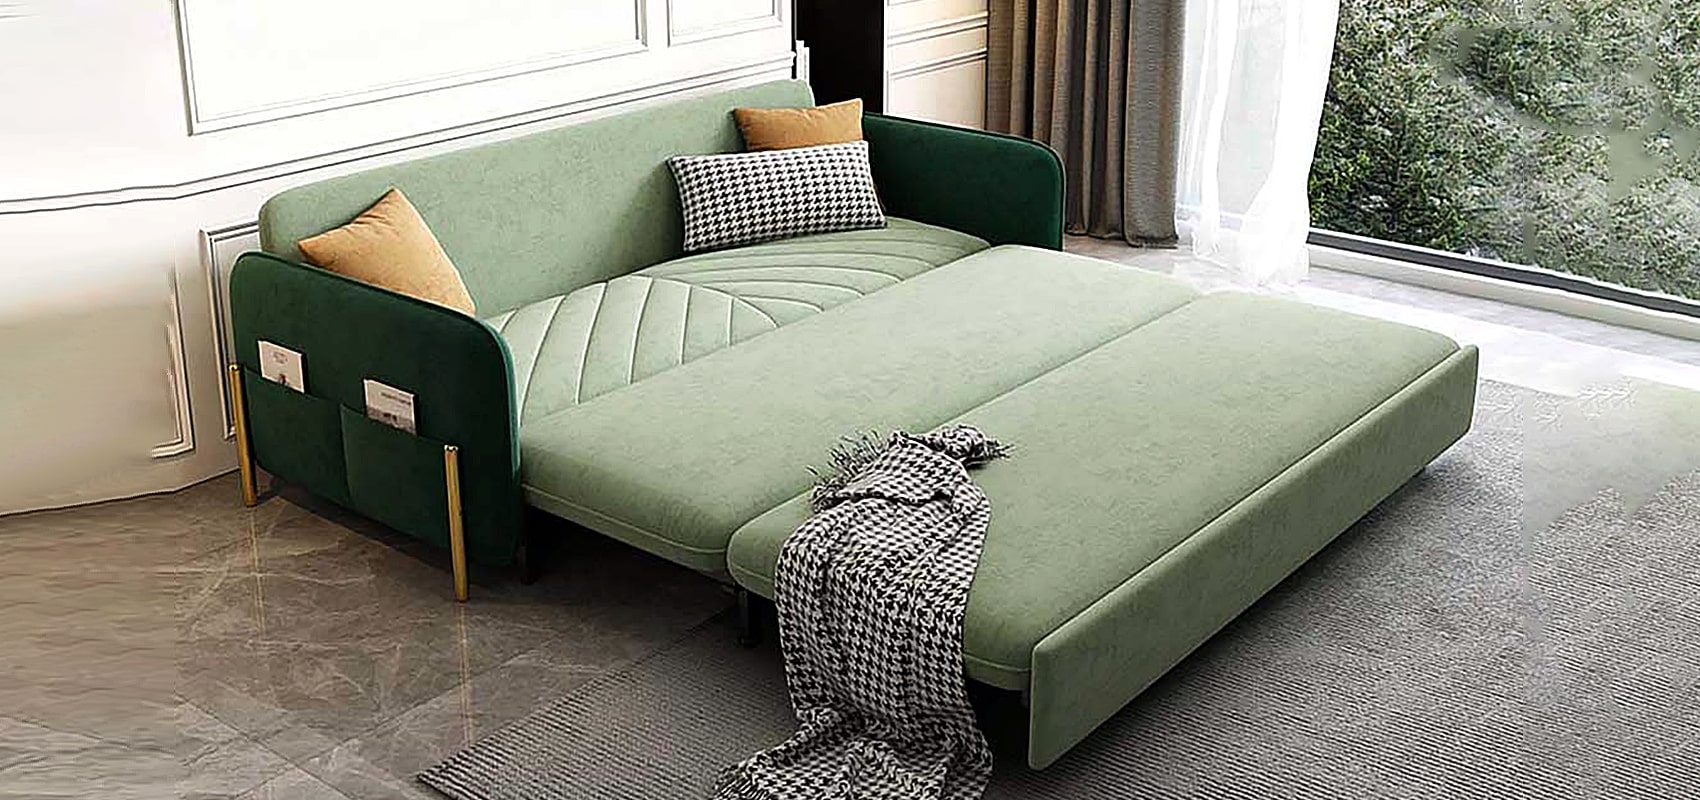 Green Sofa Sleeper | Green Sofa Bed | Green Couch Sleeper - Comfort Meets Function